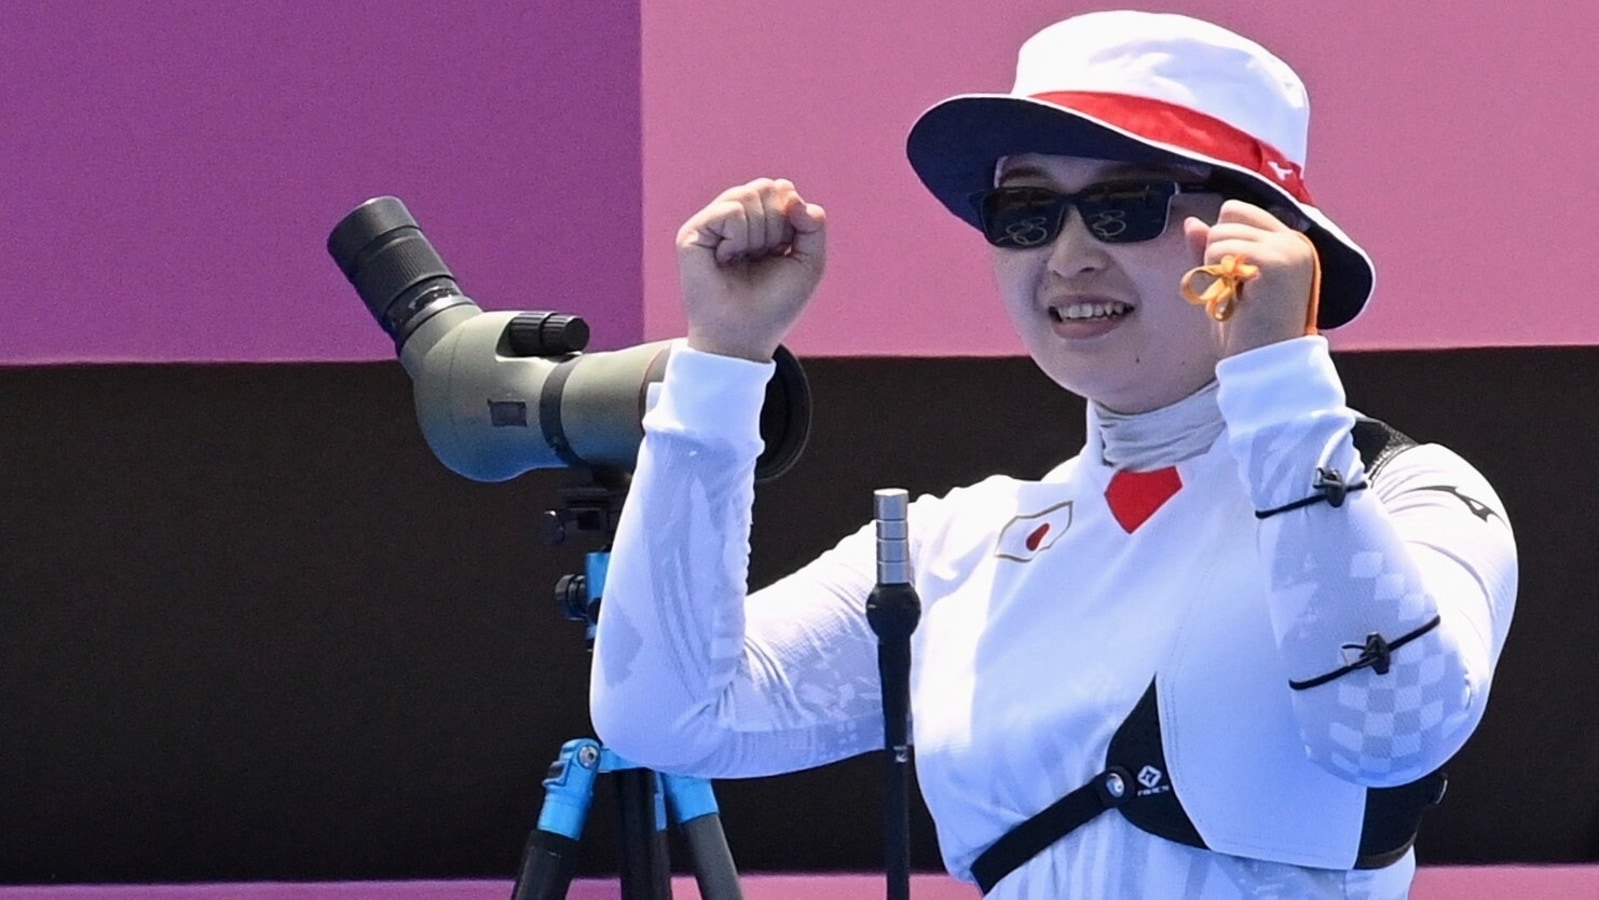 올림픽 : 한국의 장 민히 일본의 나카무라 미키에 개인 대회에서 기절했다 | 올림픽